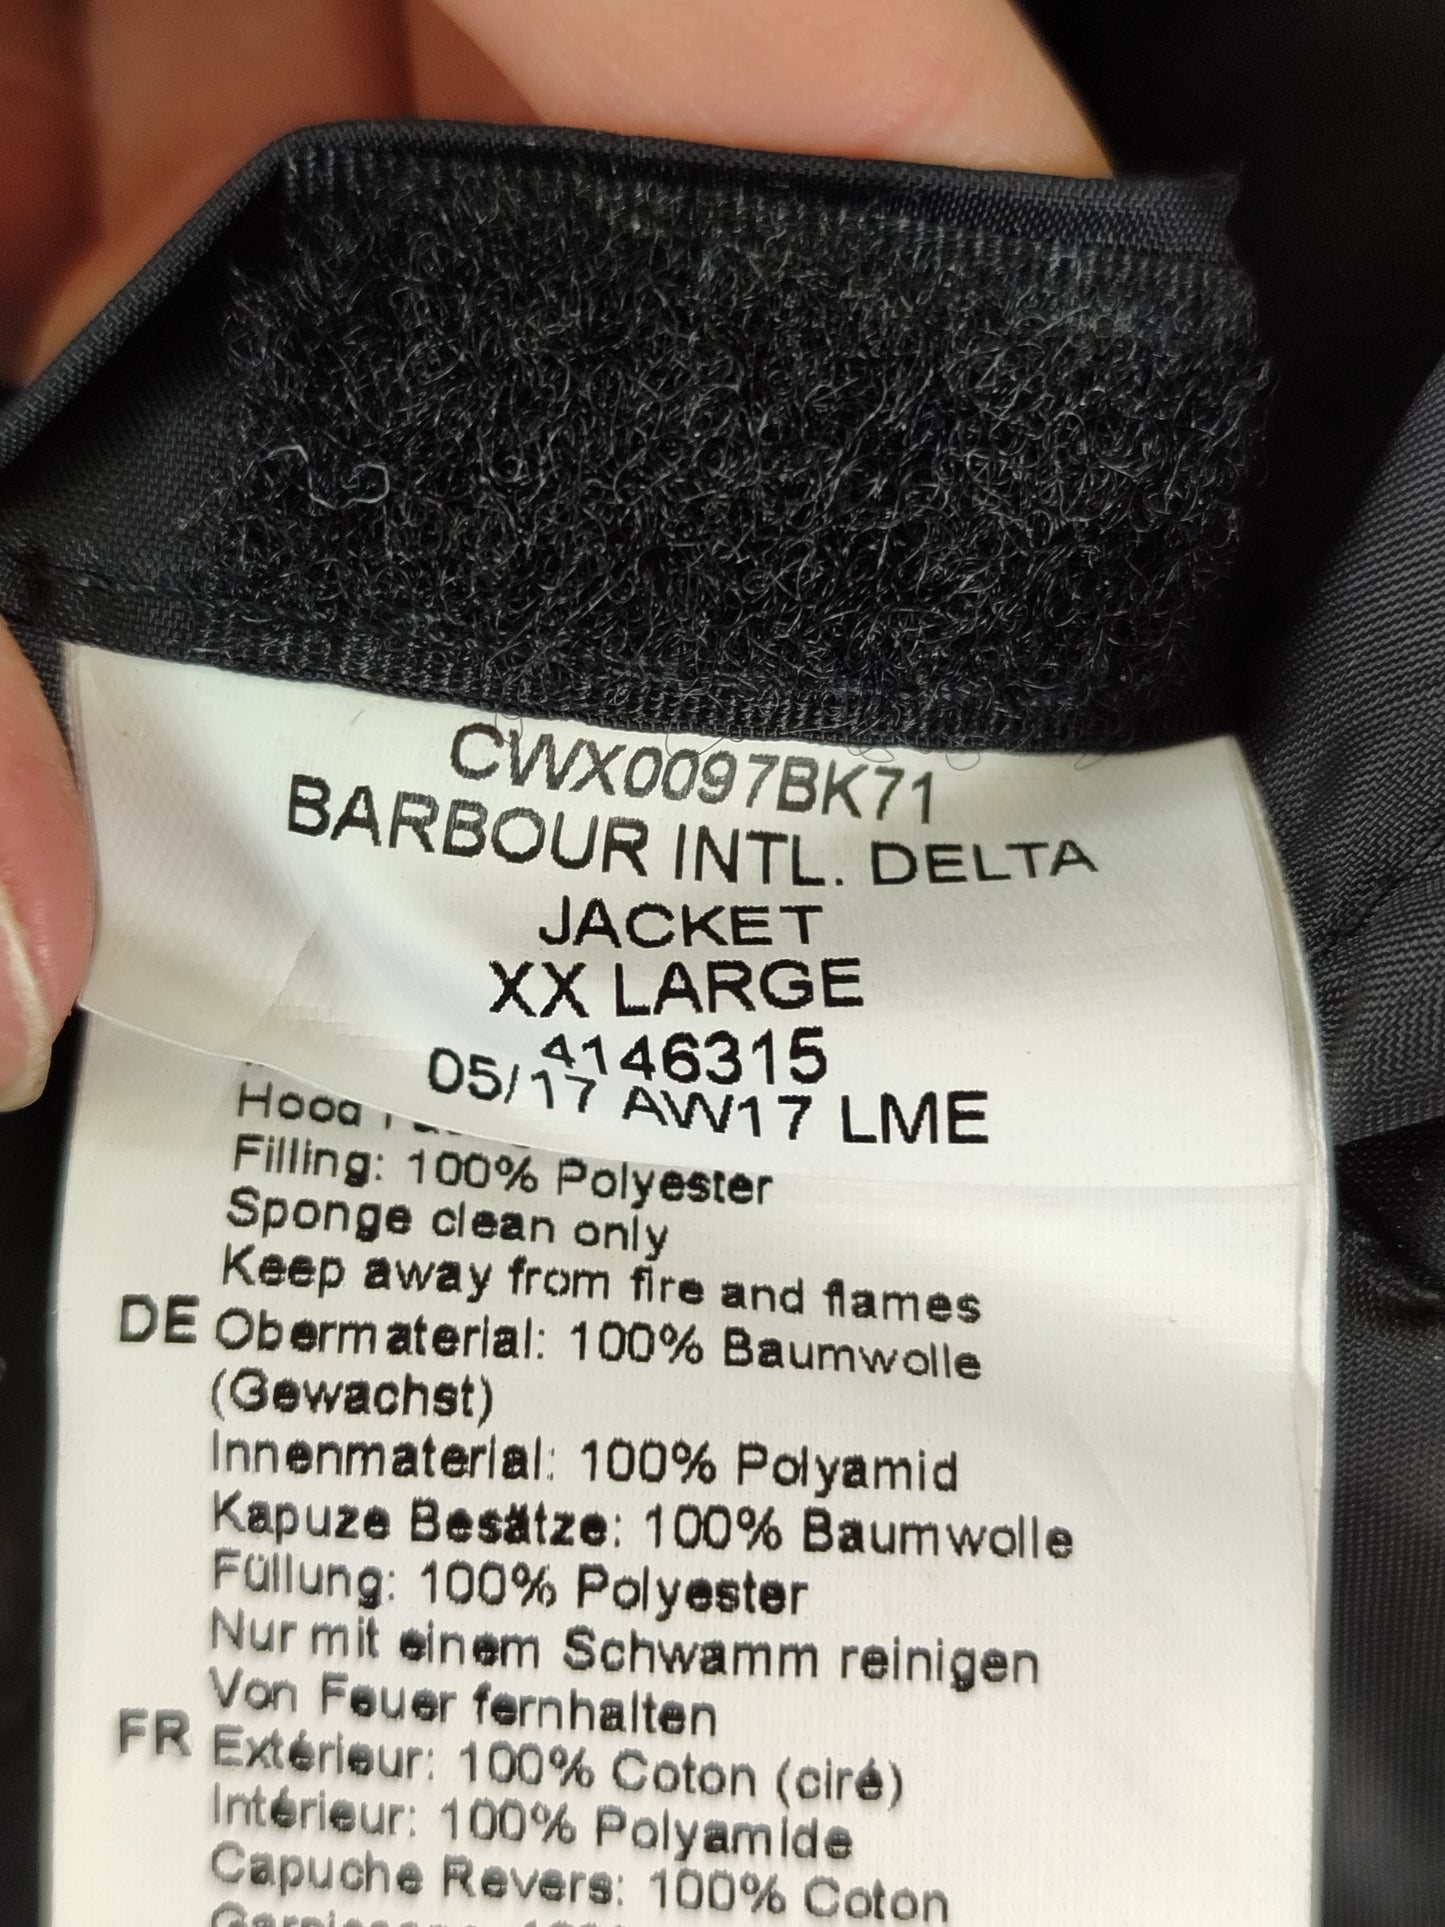 Giacca Barbour International Bambino/a nero XXL-Delta black wax kid Jacket size XXL